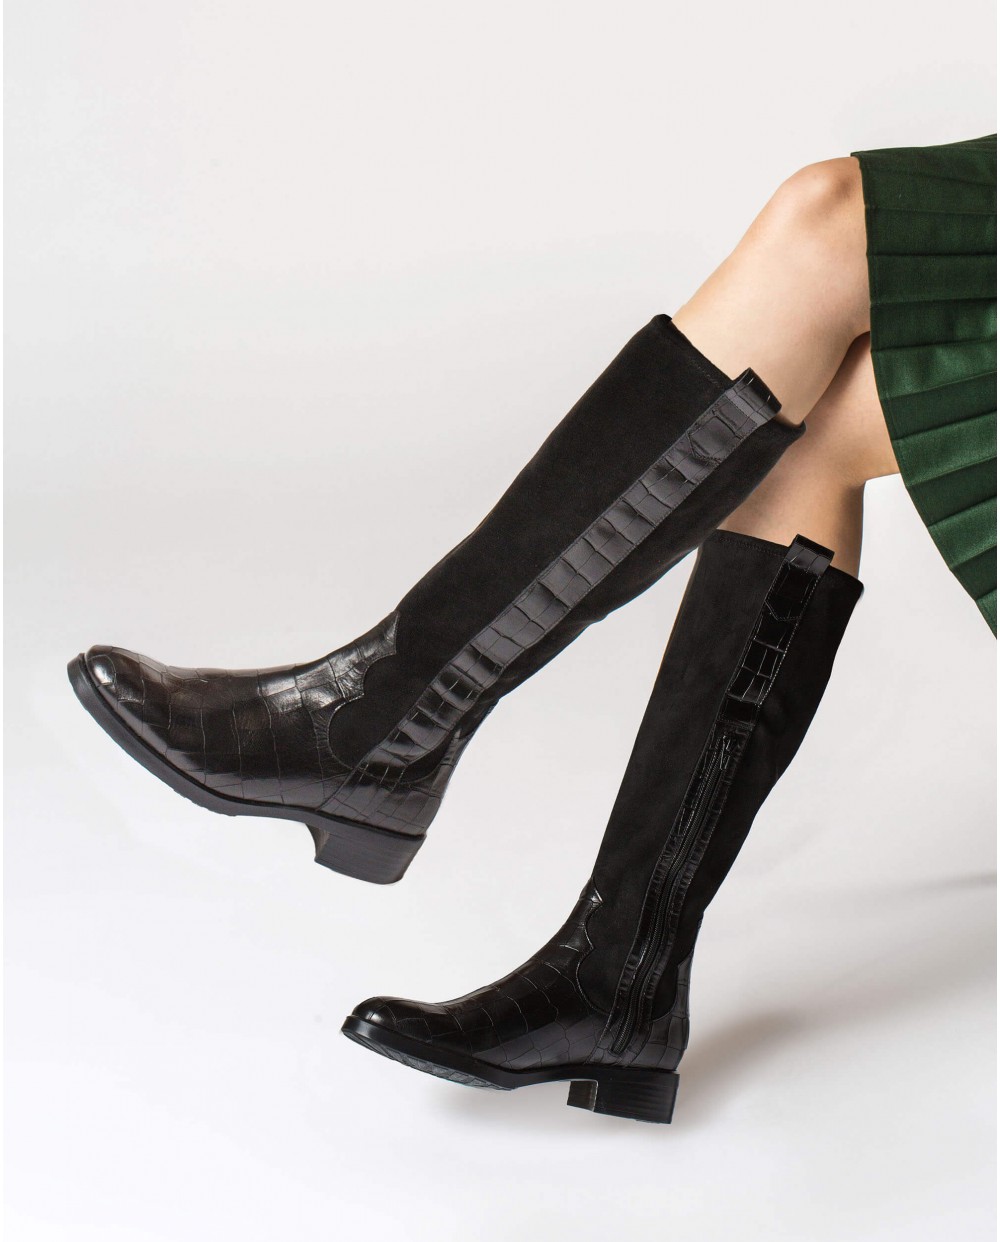 Wonders-Boots-Flat elastic boot